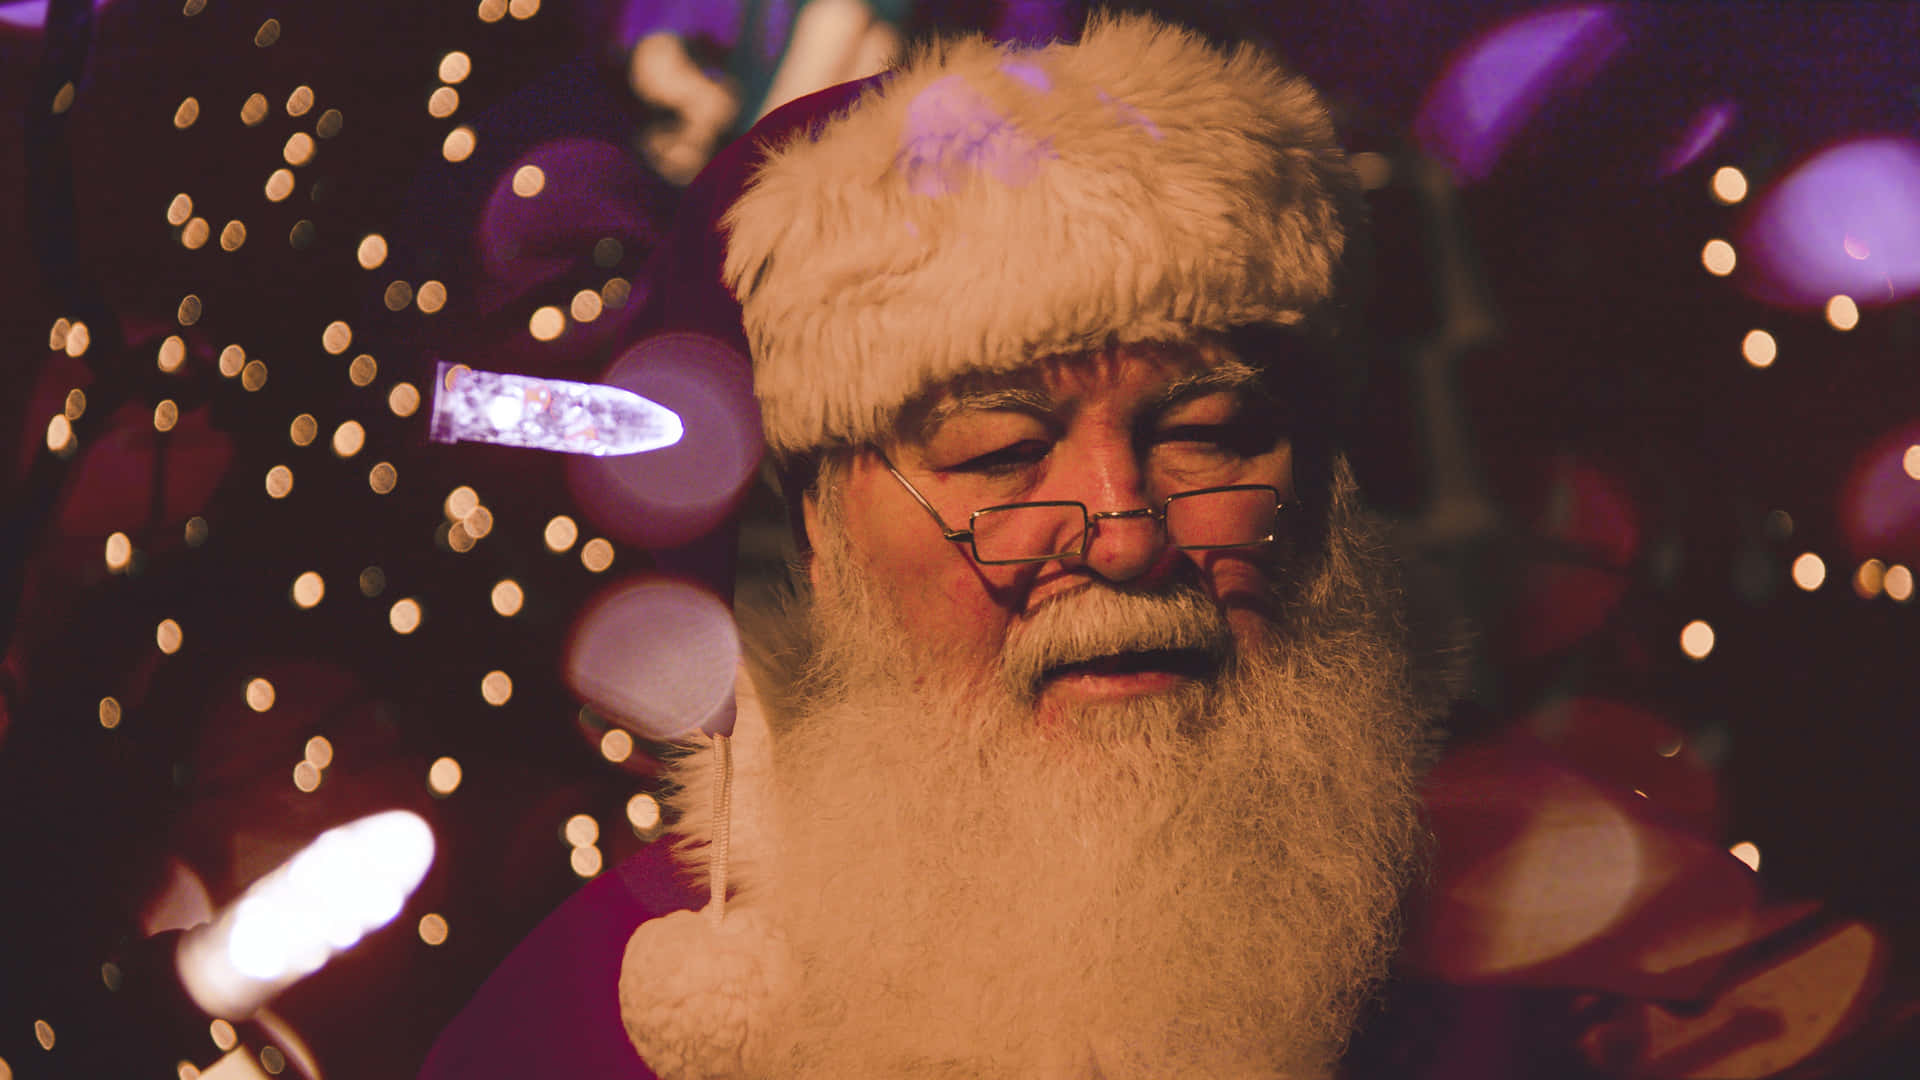 Escenade Santa Claus En Navidad Con Fondo Desenfocado De Bokeh.